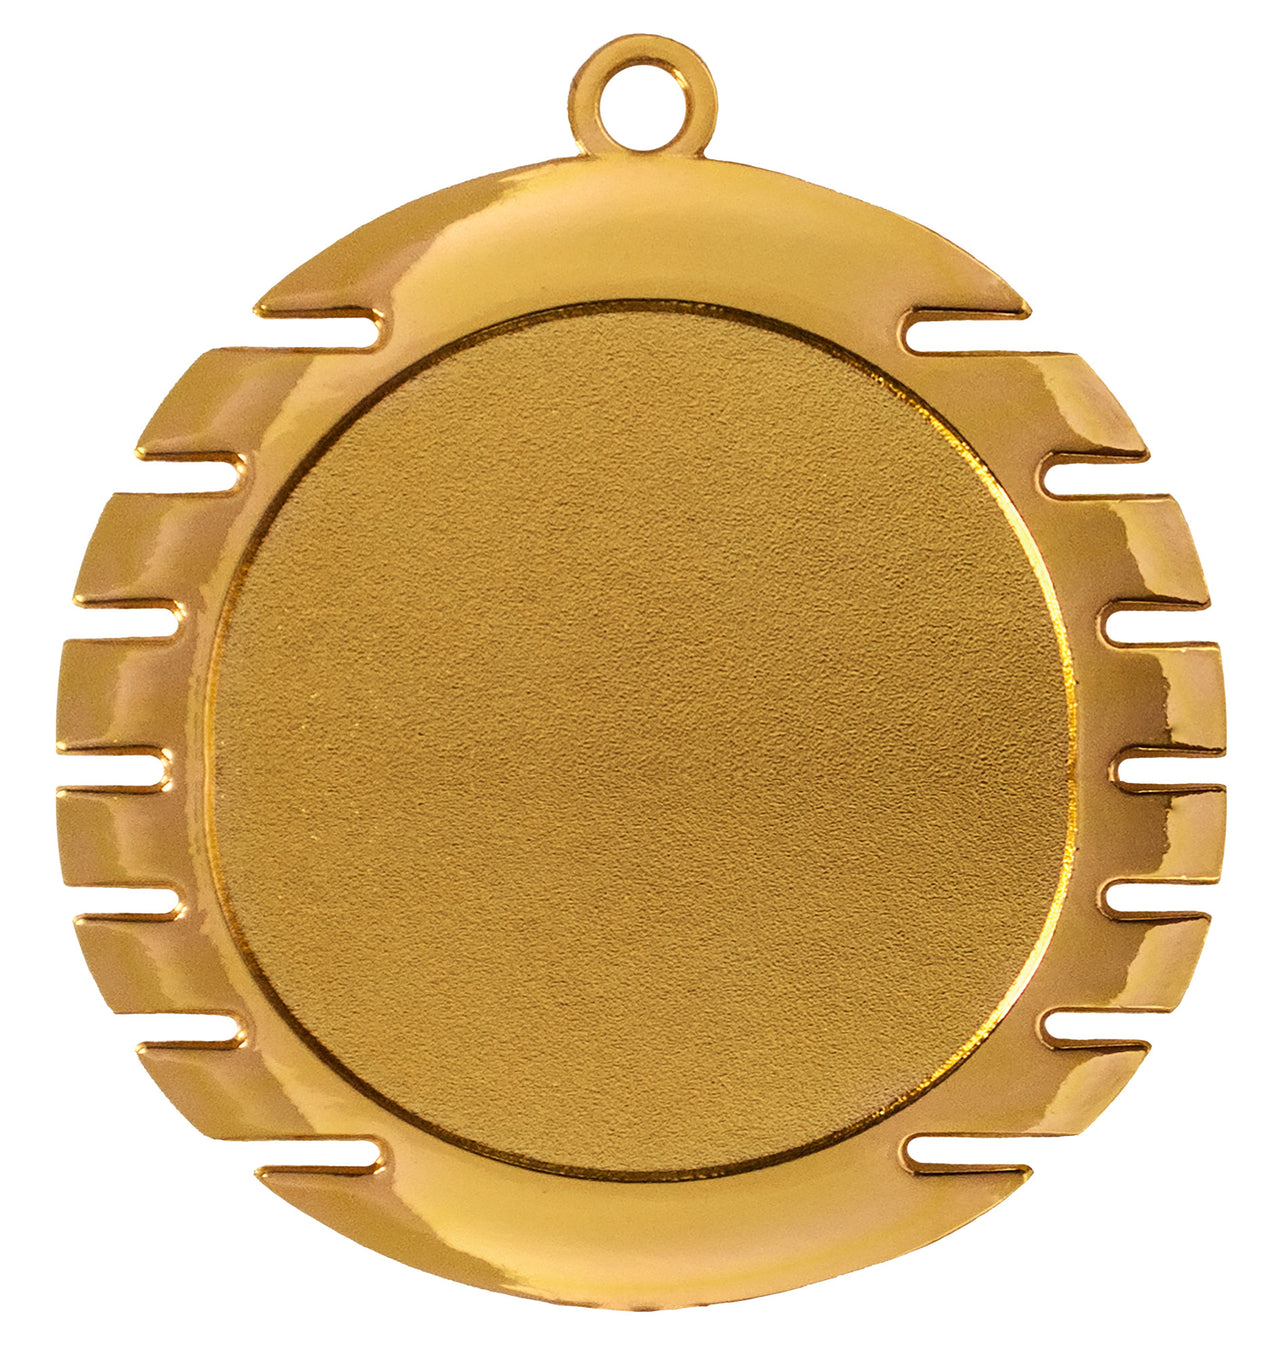 Die Medaillen Marl 70 mm PK79307g-E50 ist eine runde Goldmedaille mit einer Öse an der Oberseite und gleichmäßig verteilten Rillen am Rand. Sie ist aus hochwertigem Material gefertigt, die Mitte ist leer und kann individuell gestaltet oder graviert werden.